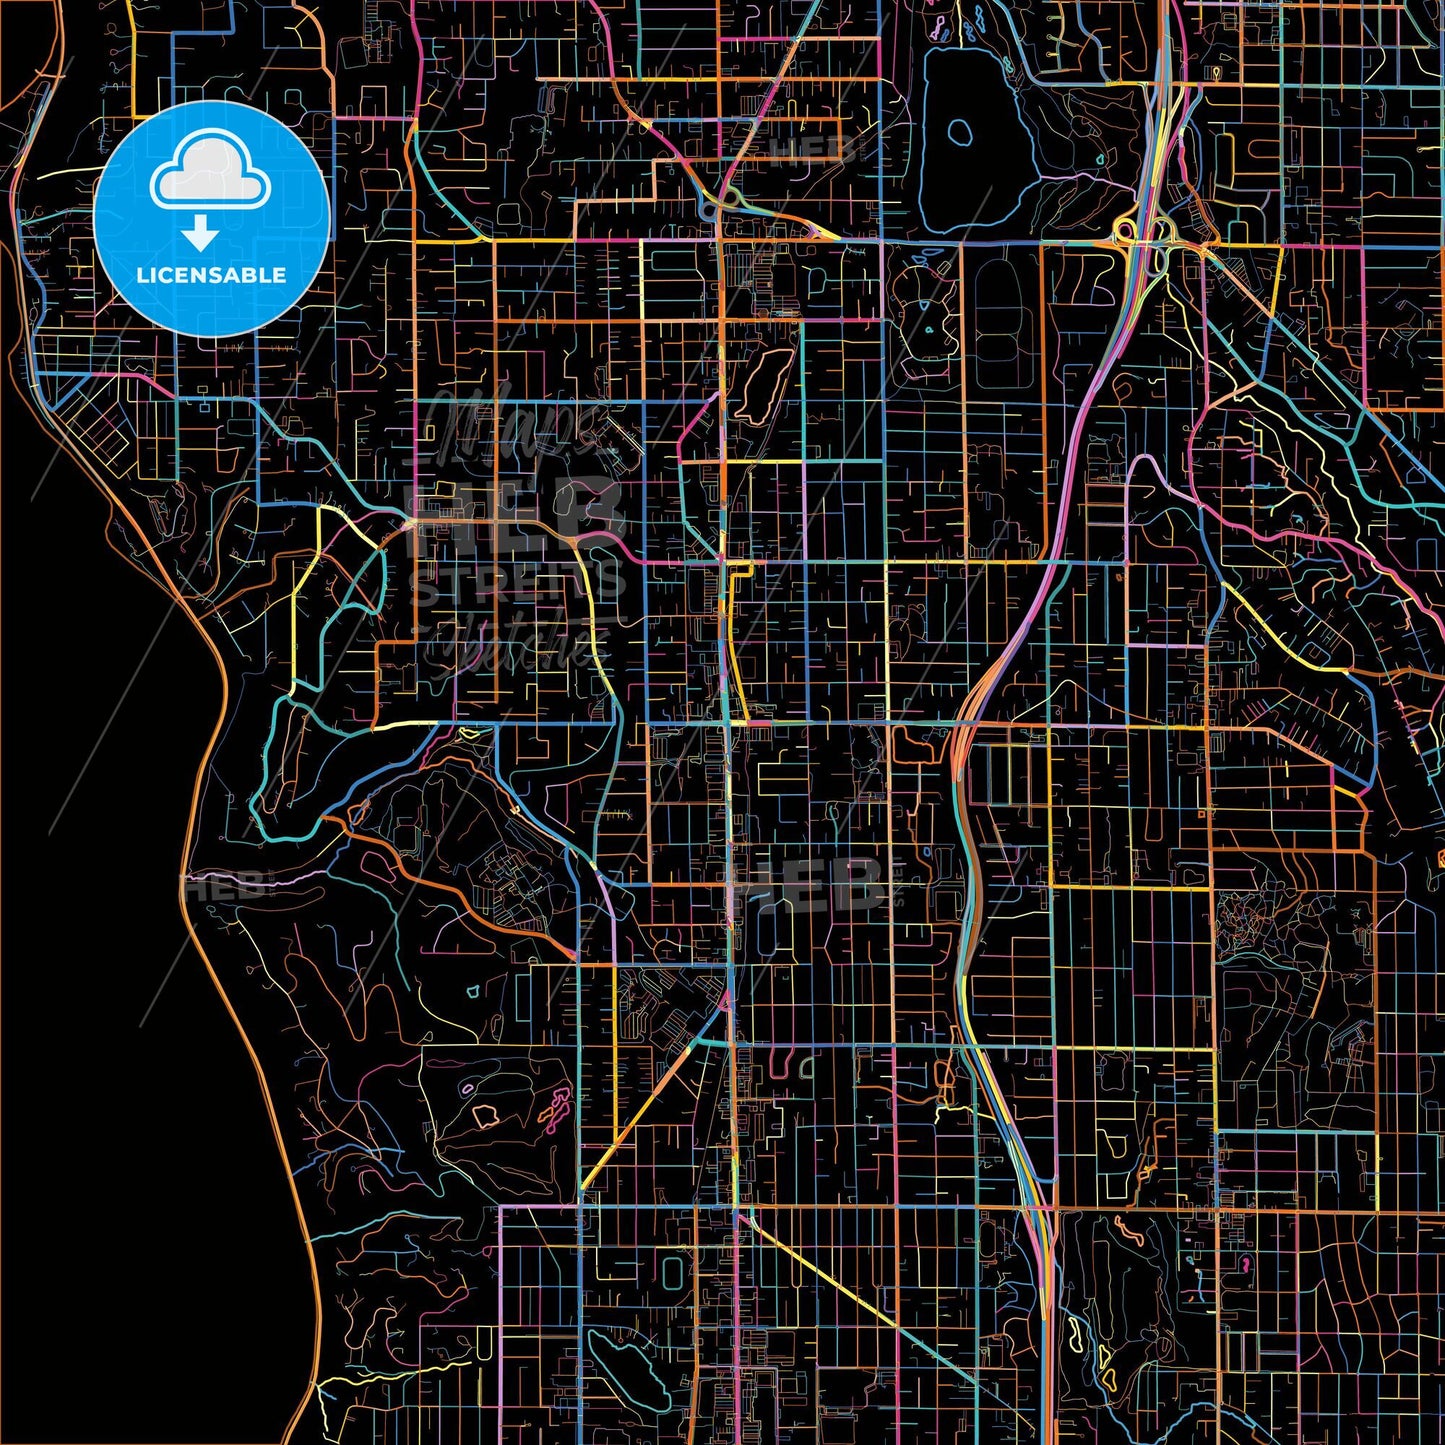 Shoreline, Washington, United States, colorful city map on black background